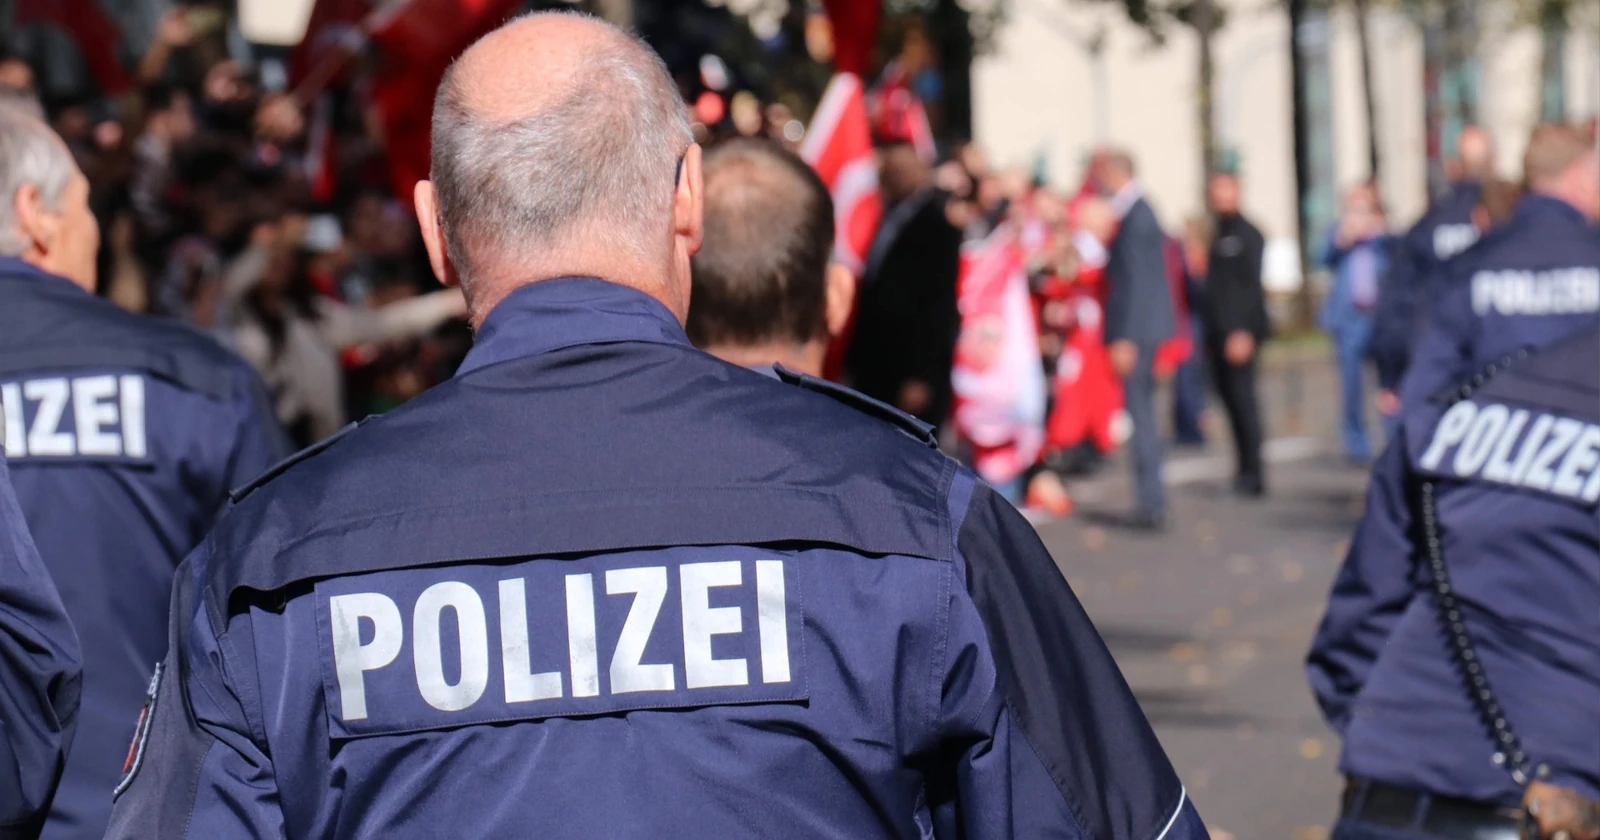 Gemeinsame Pressemeldung von Staatsanwaltschaft, Stadt und Polizei Hildesheim - Ladendieb im beschleunigten Verfahren verurteilt - Stadt erlässt Ausreiseverfügung